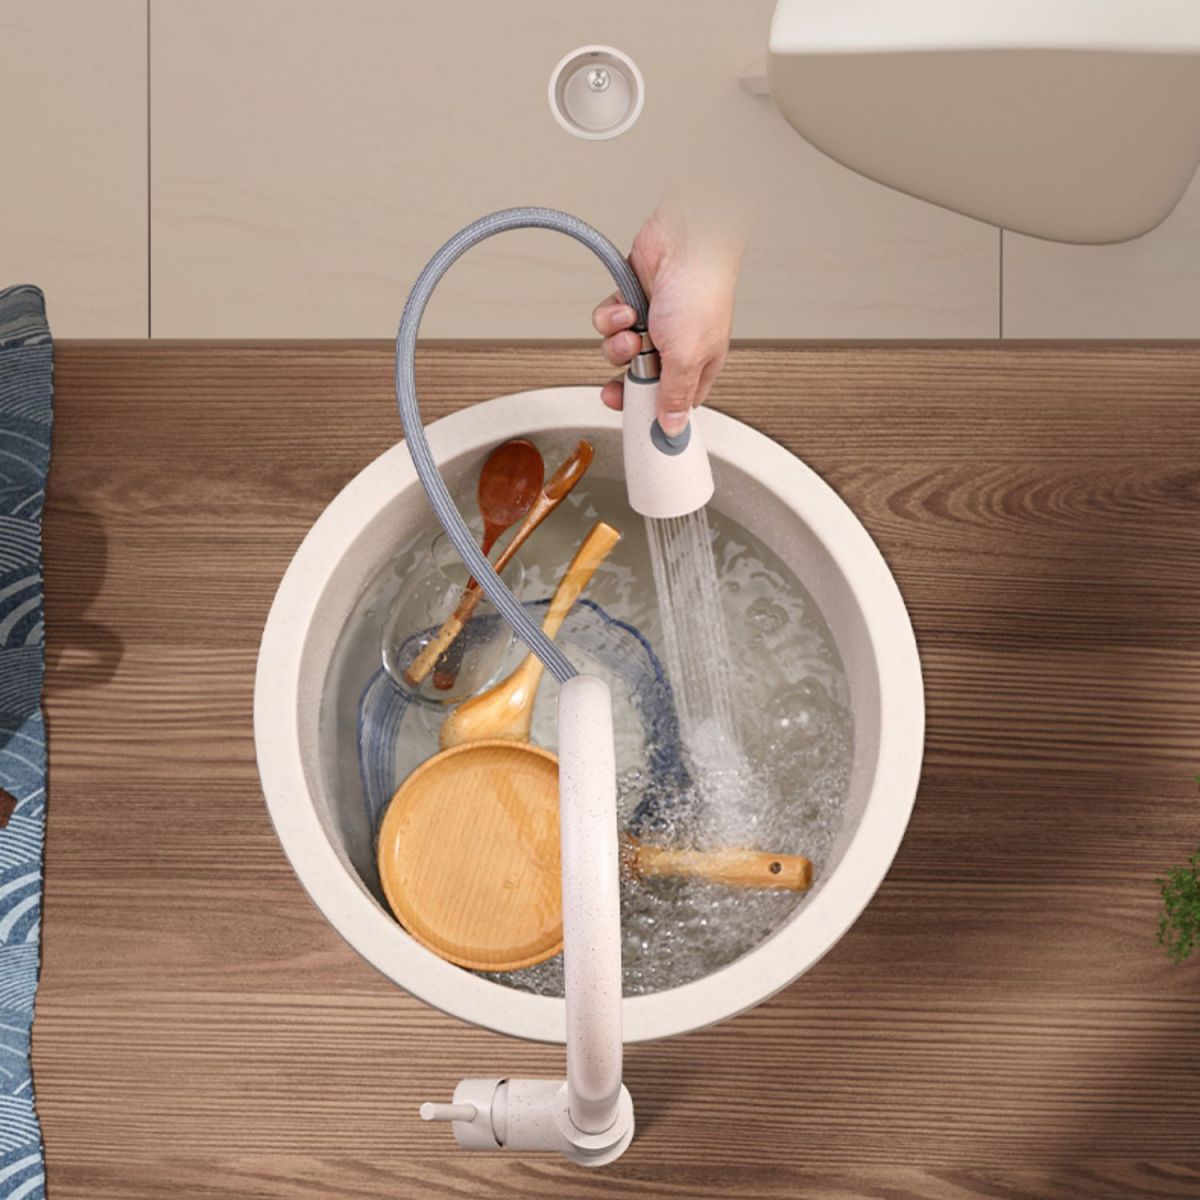 Round Kitchen Sink Quartz Single Bowl Kitchen Sink with Drain Assembly